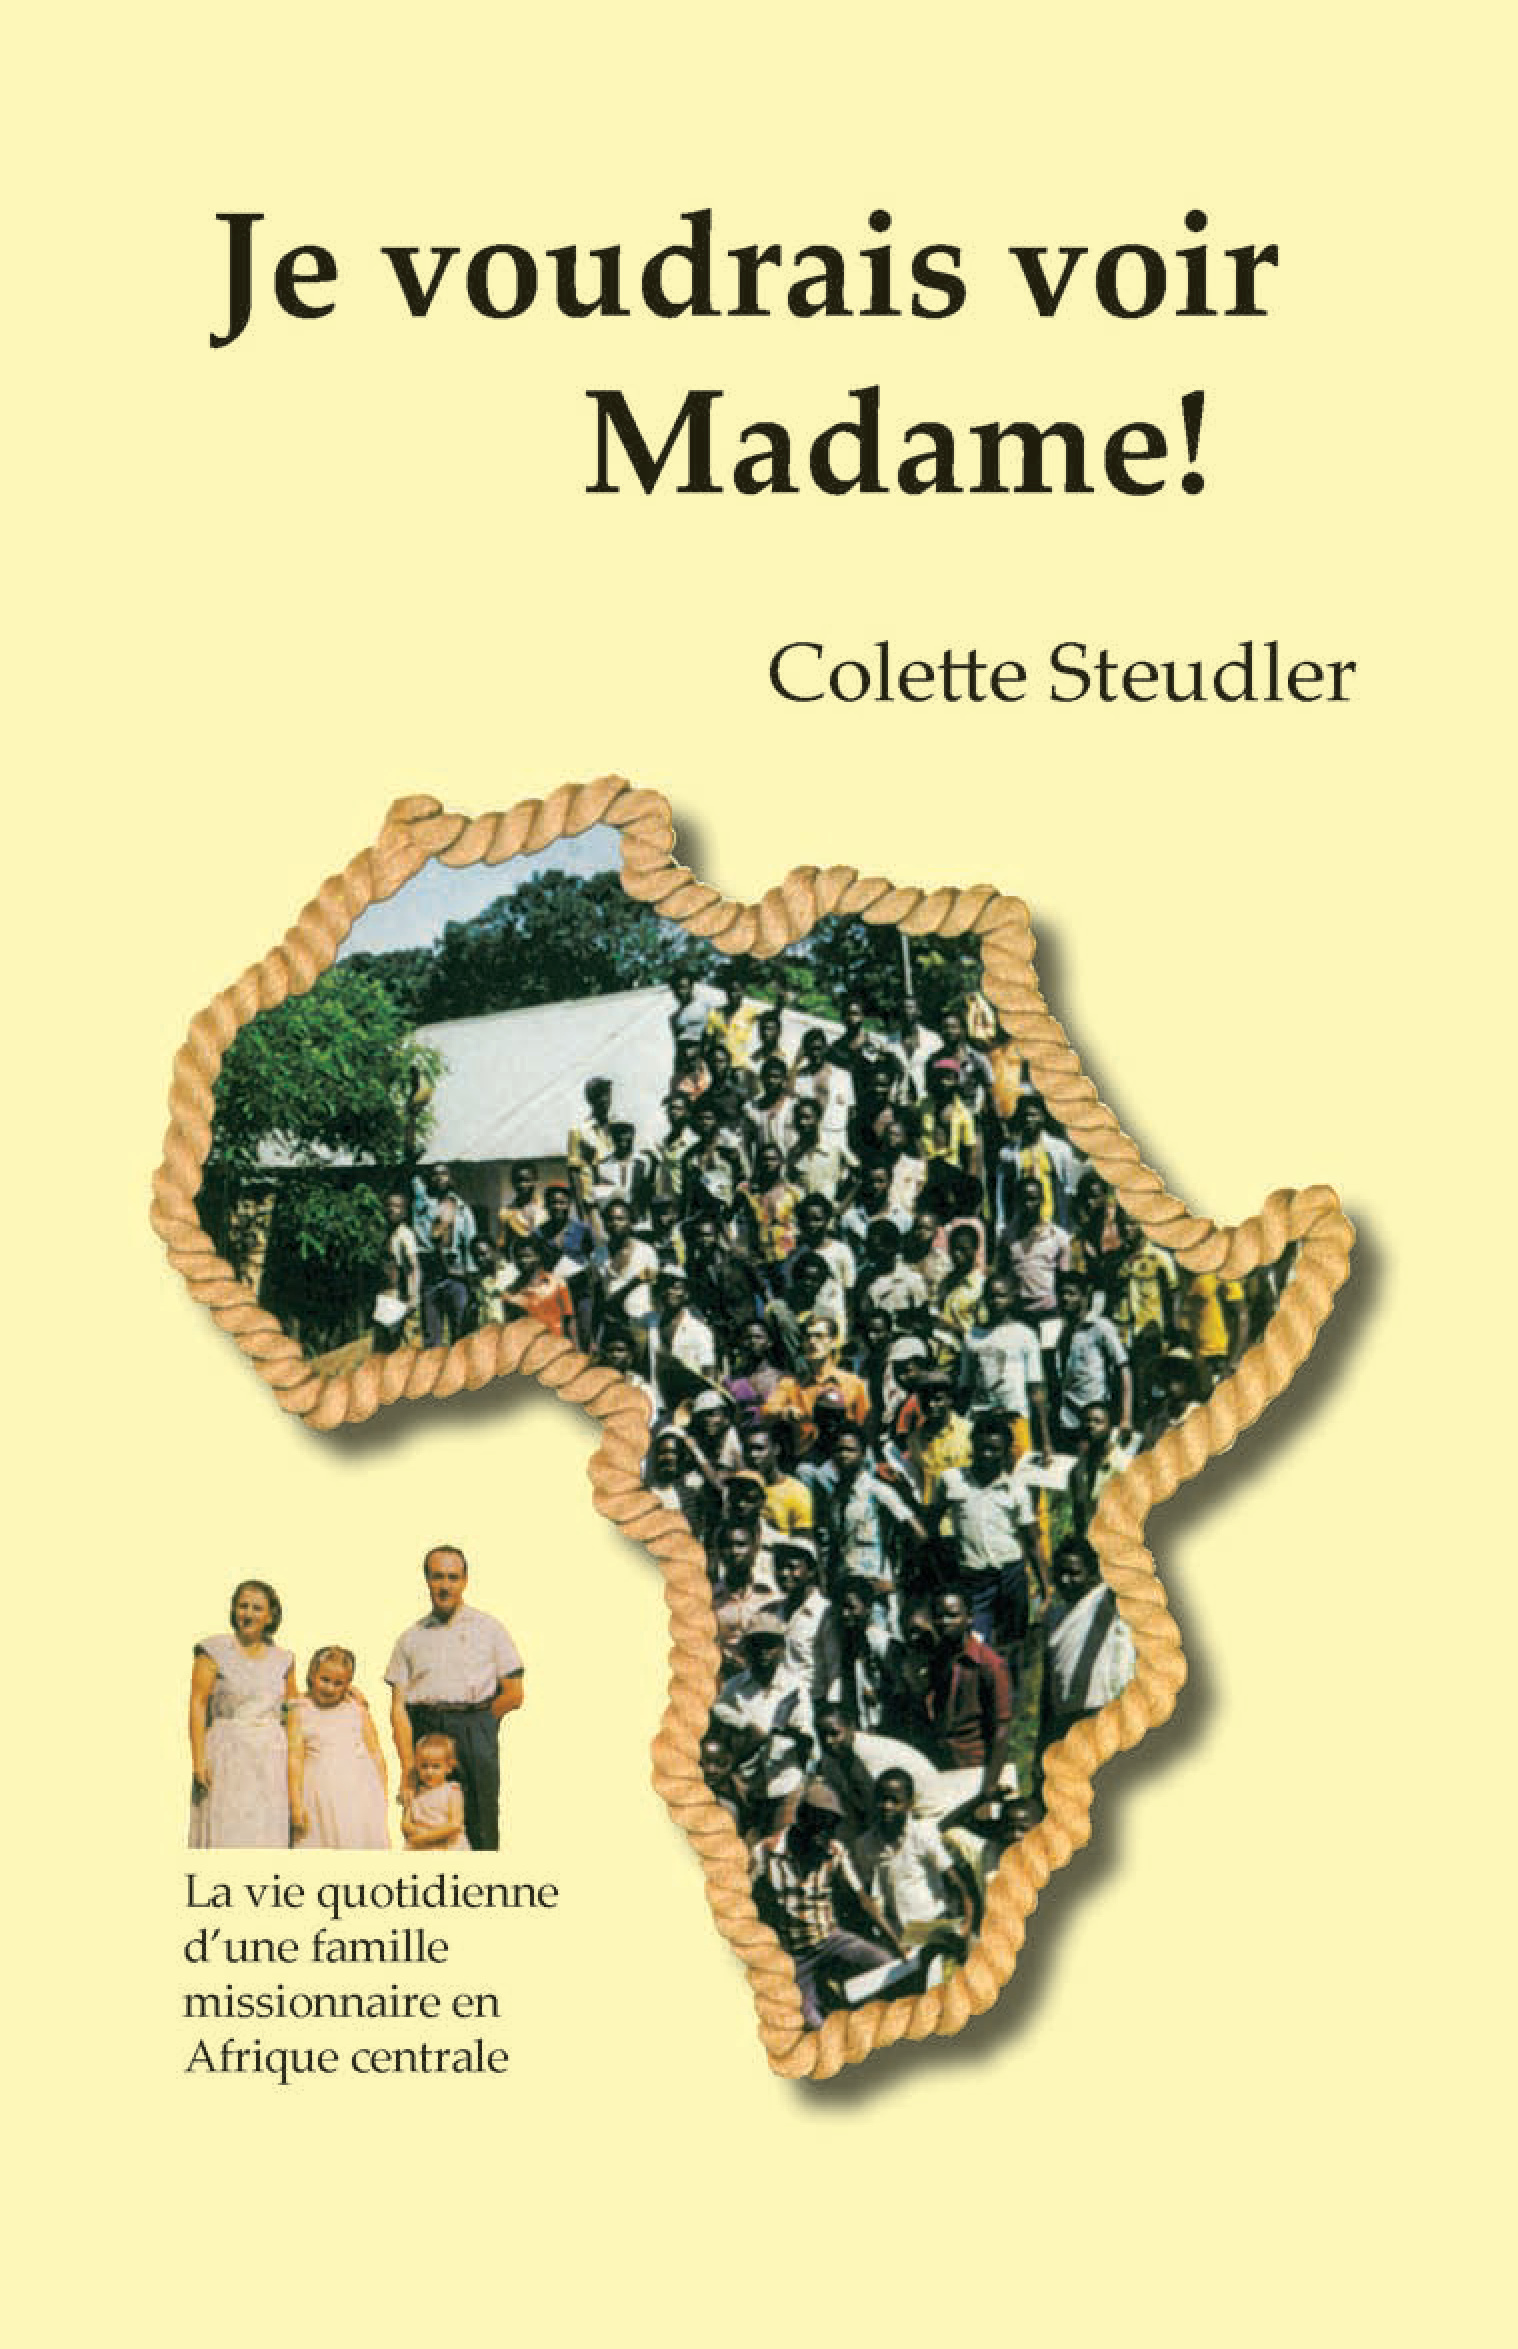 Je voudrais voir madame! - La vie quotidienne d'une famille missionnaire en Afrique centrale - PDF